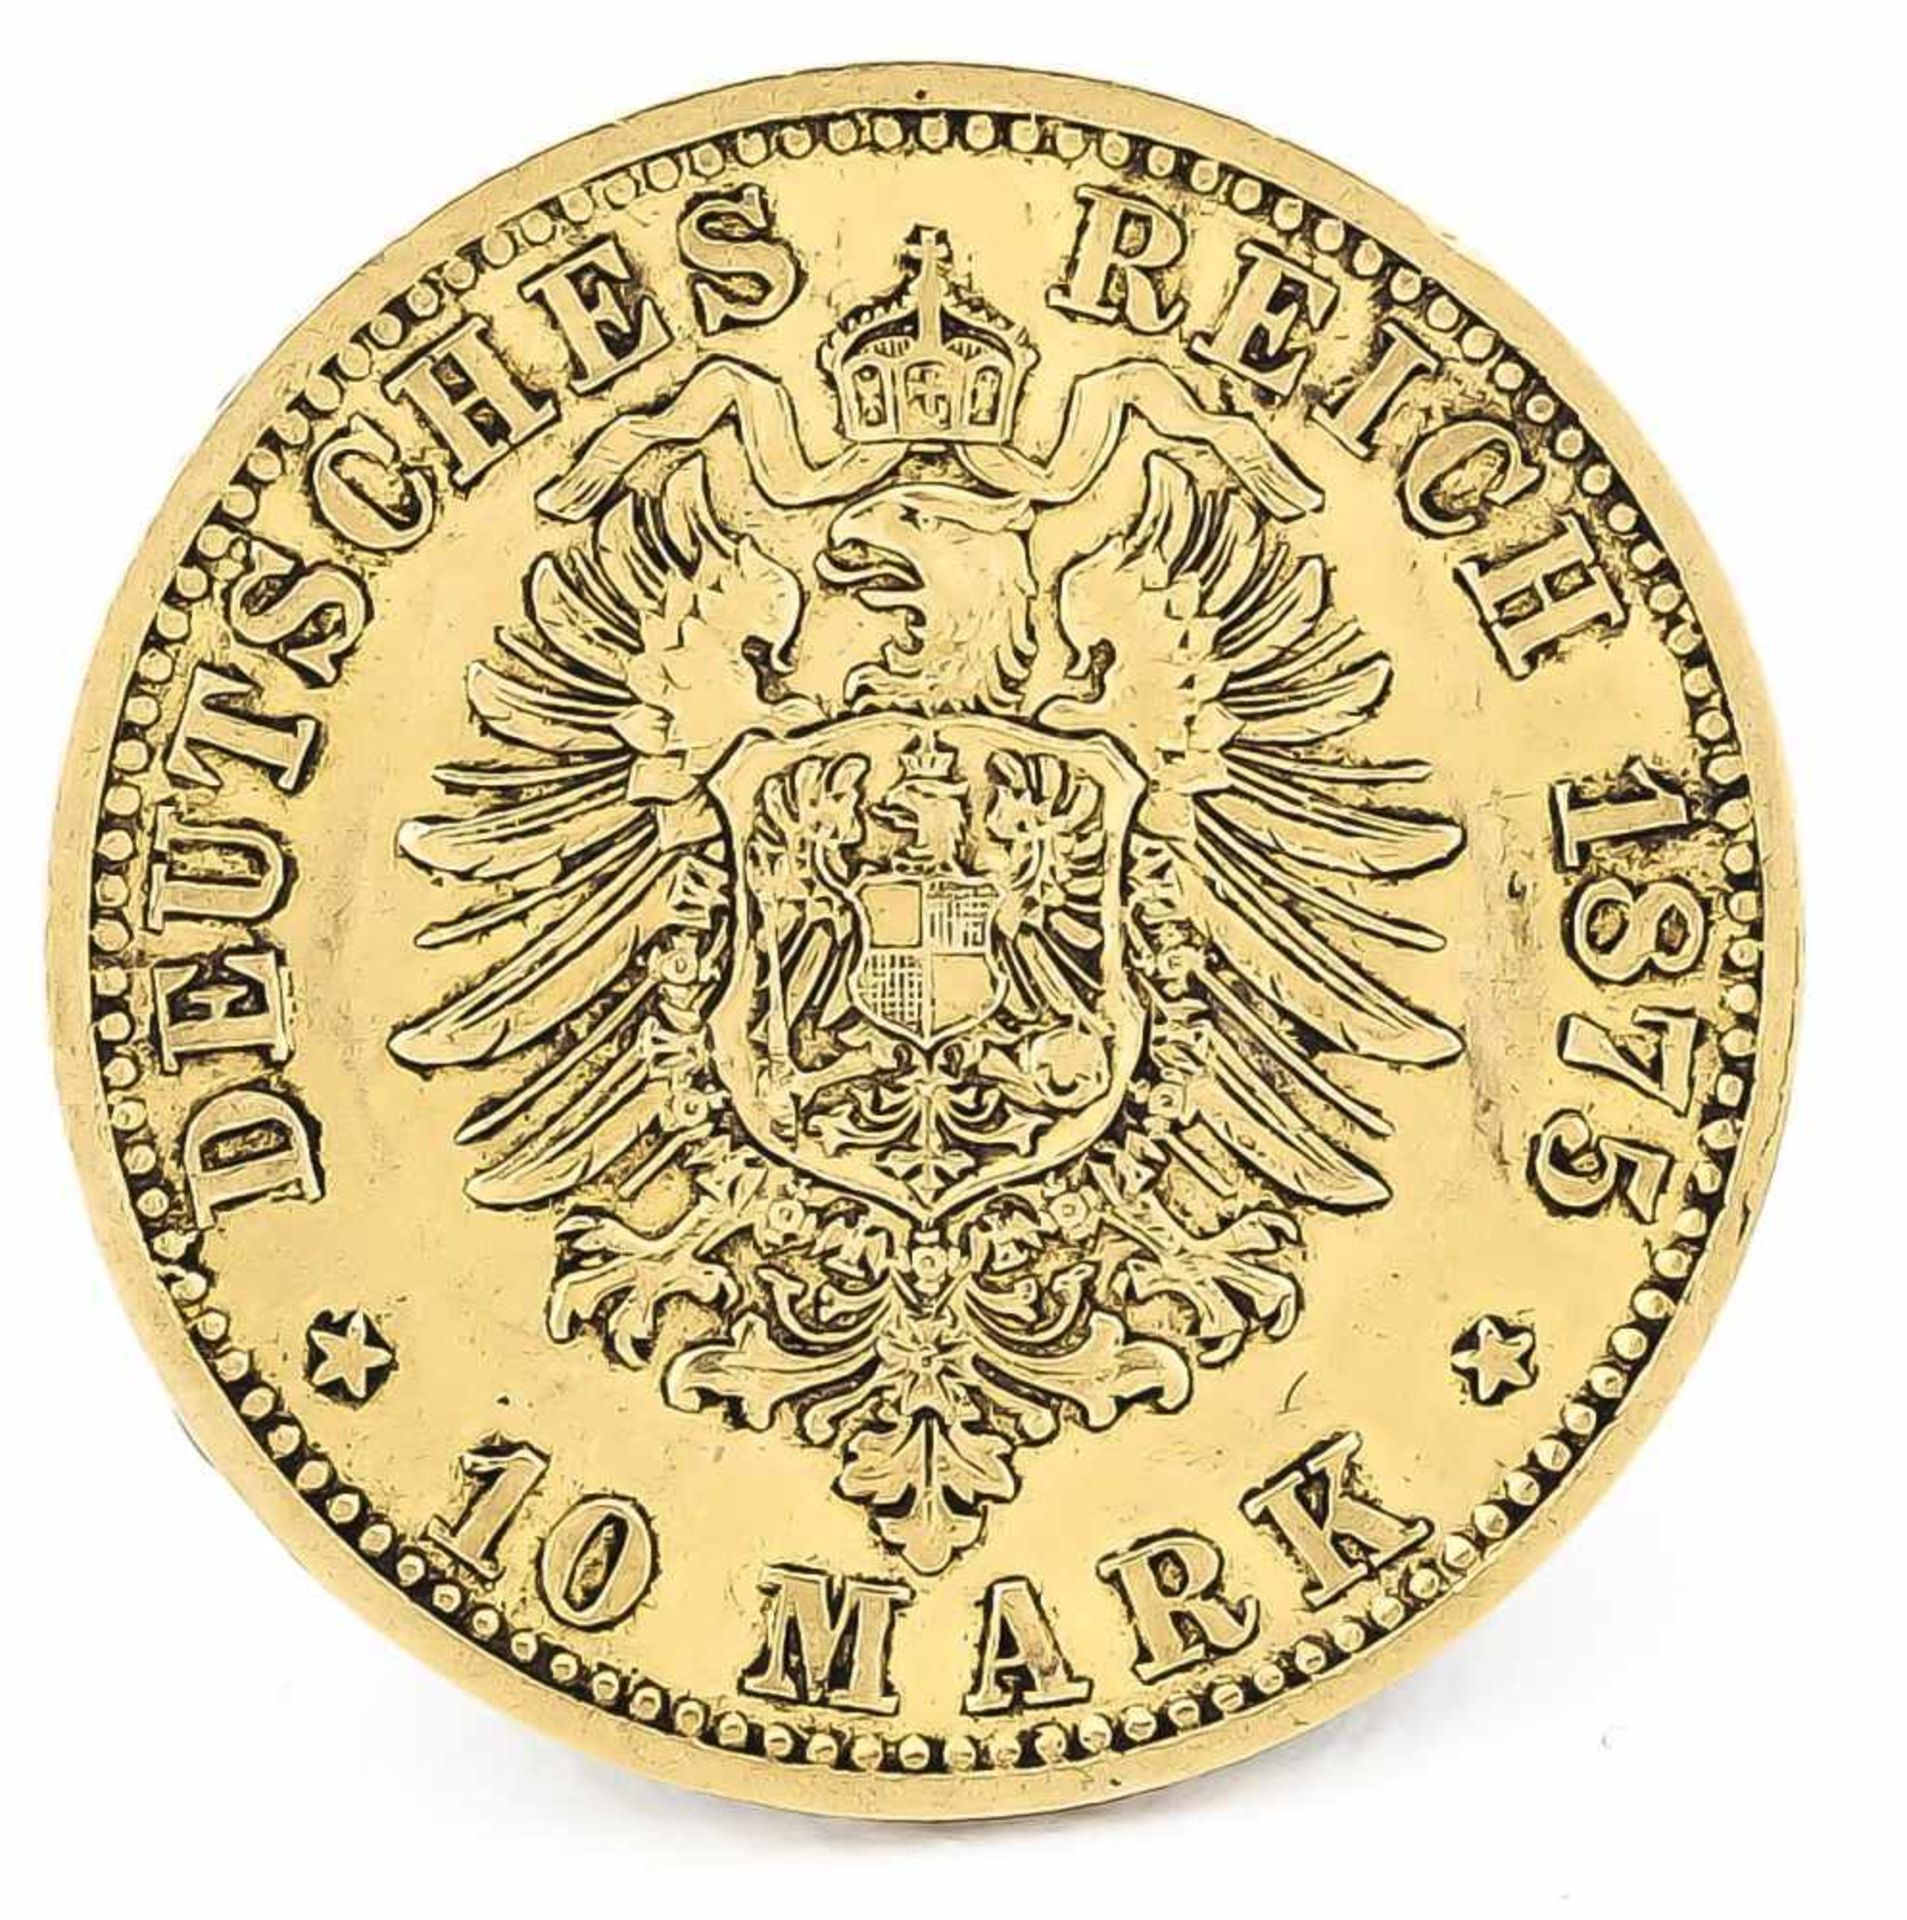 10 Mark, Preußen, Wilhelm Deutscher Kaiser König von Preußen, 1875 A, in ss-vz - Bild 2 aus 2